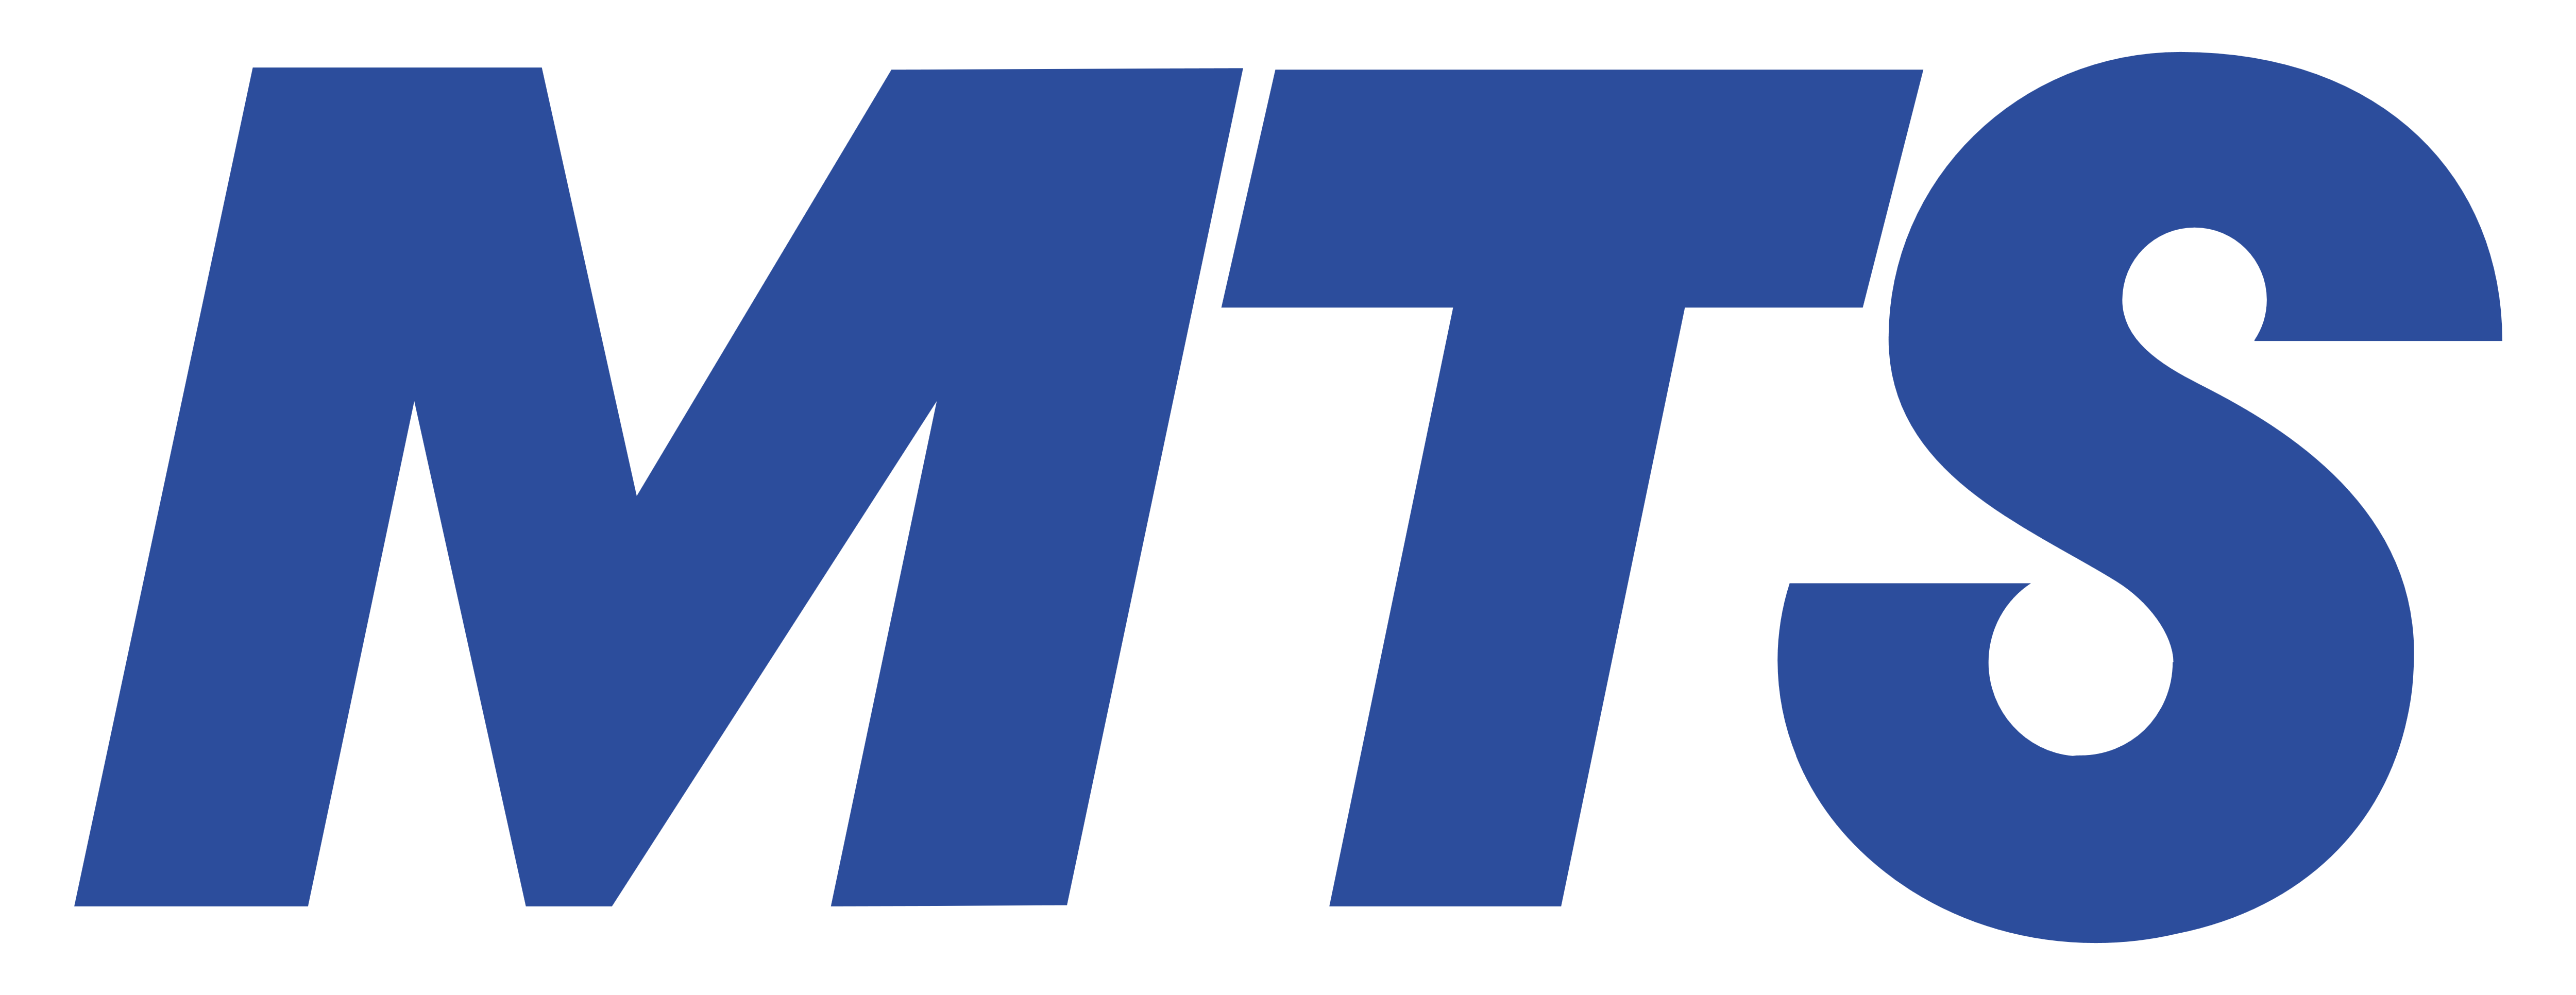 MTS – Logos Download